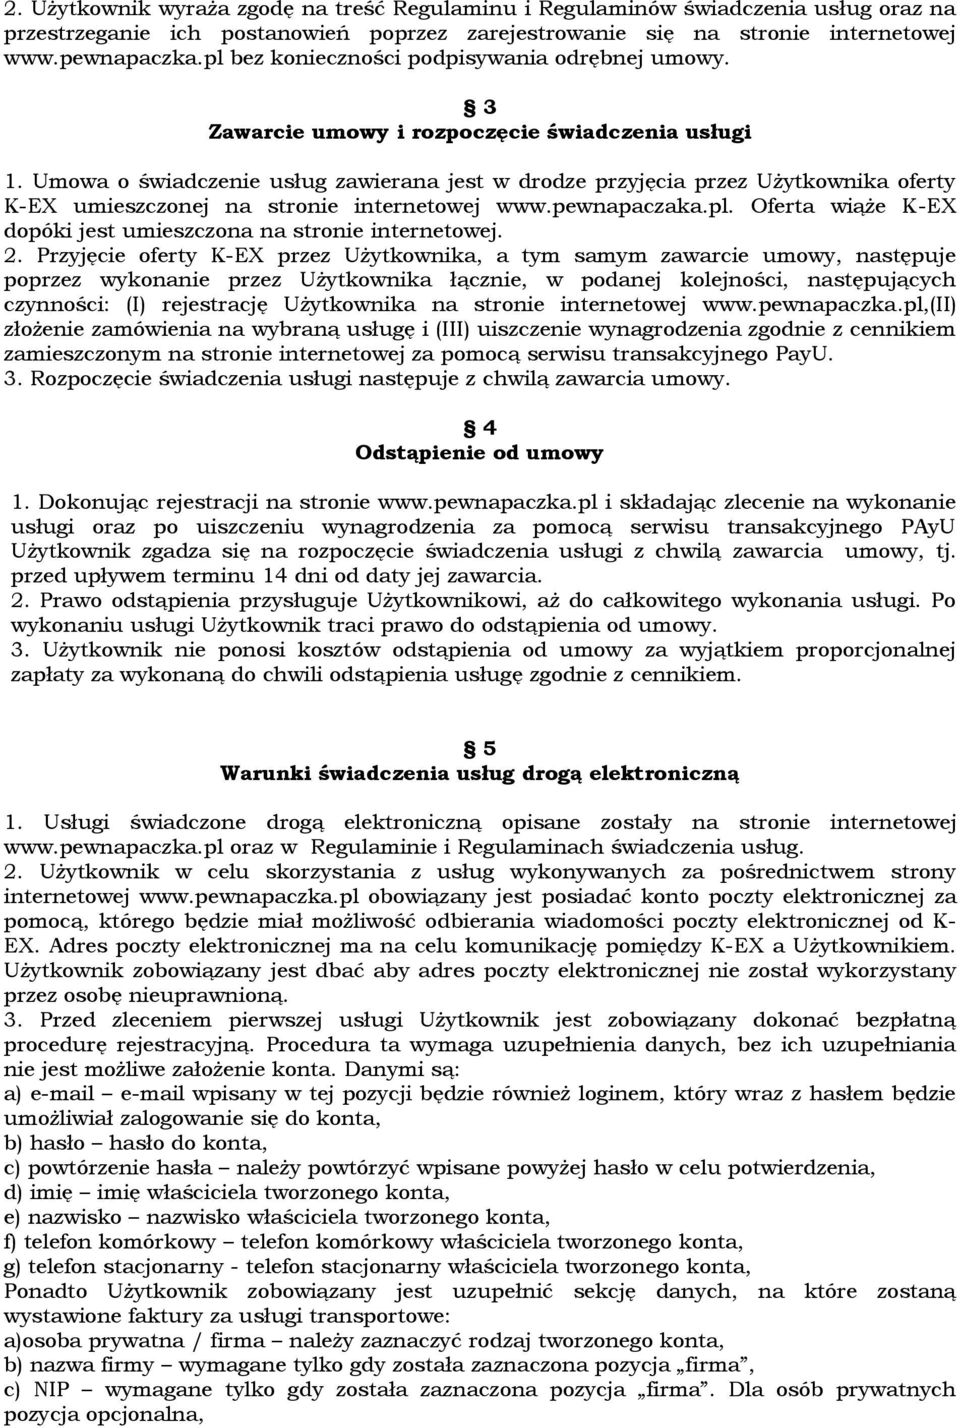 Umowa o świadczenie usług zawierana jest w drodze przyjęcia przez Użytkownika oferty K-EX umieszczonej na stronie internetowej www.pewnapaczaka.pl.